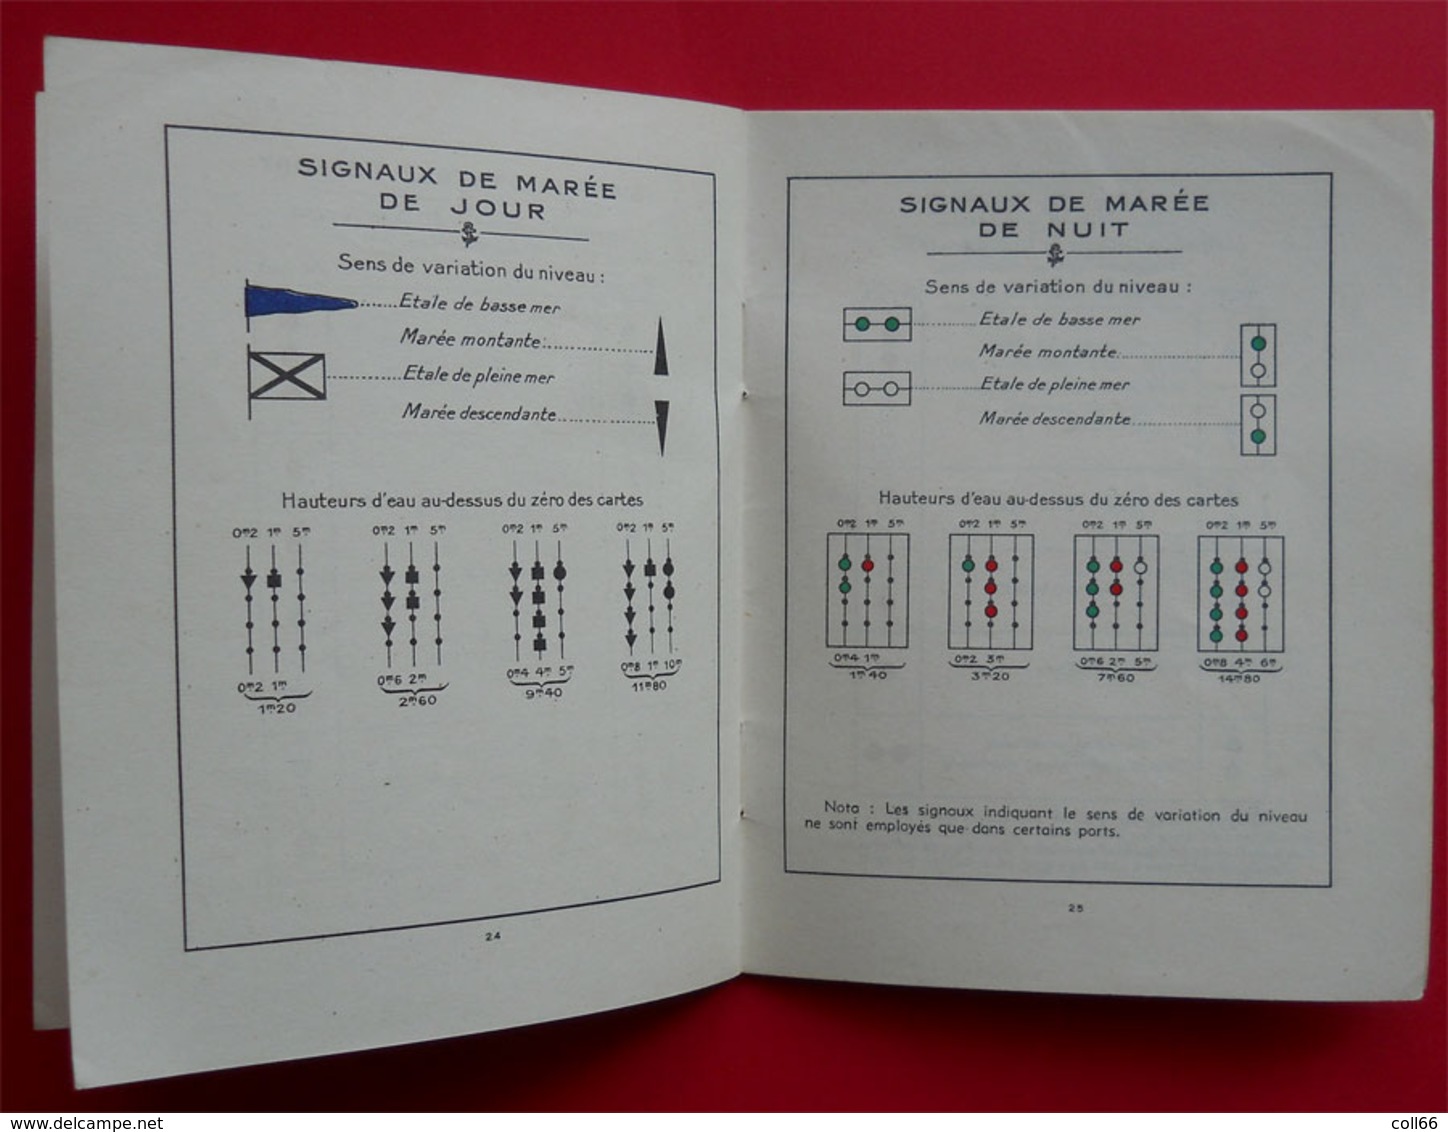 1953 Brochure Feux et signaux pour navigateurs nombreuses illustrations 32 pages édit Ozanne Paris illustré Paul Peron